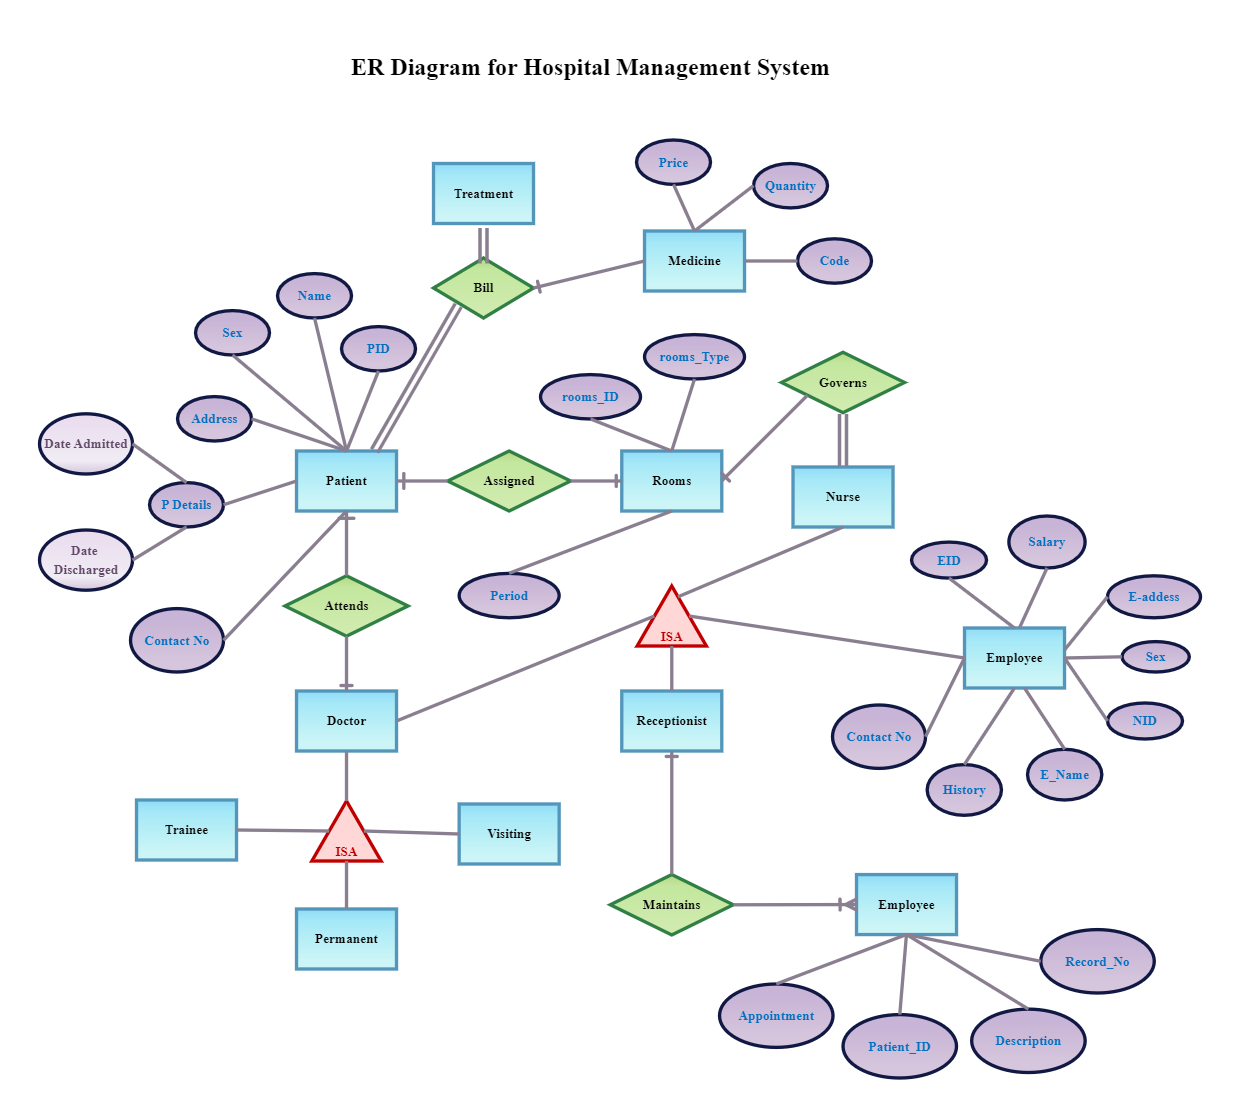 Draw an er diagram for hospital management system